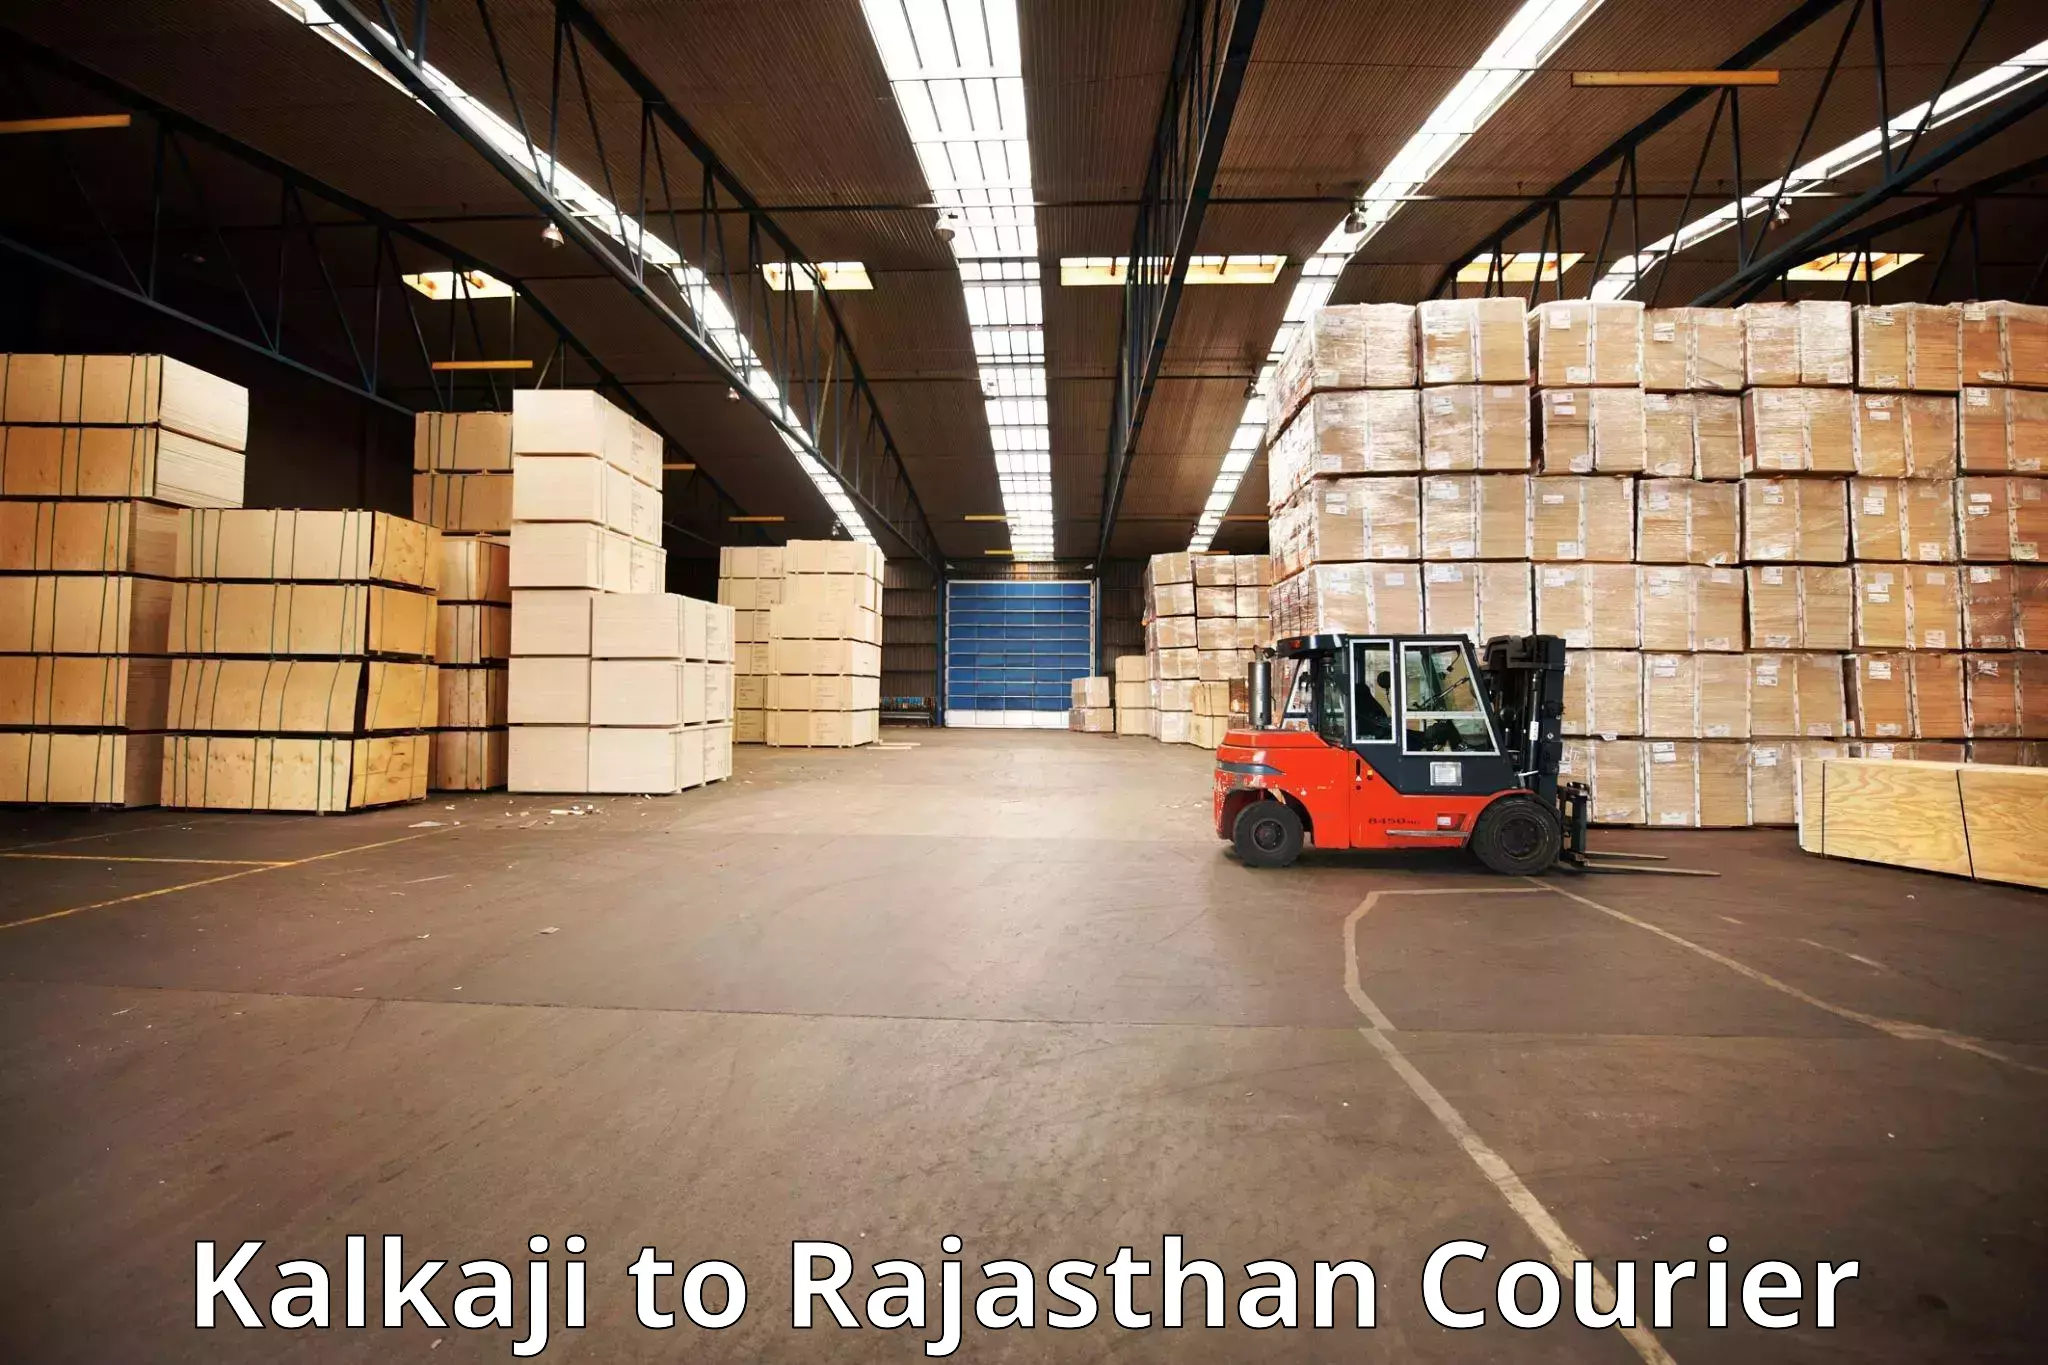 Baggage transport services Kalkaji to Rajasthan